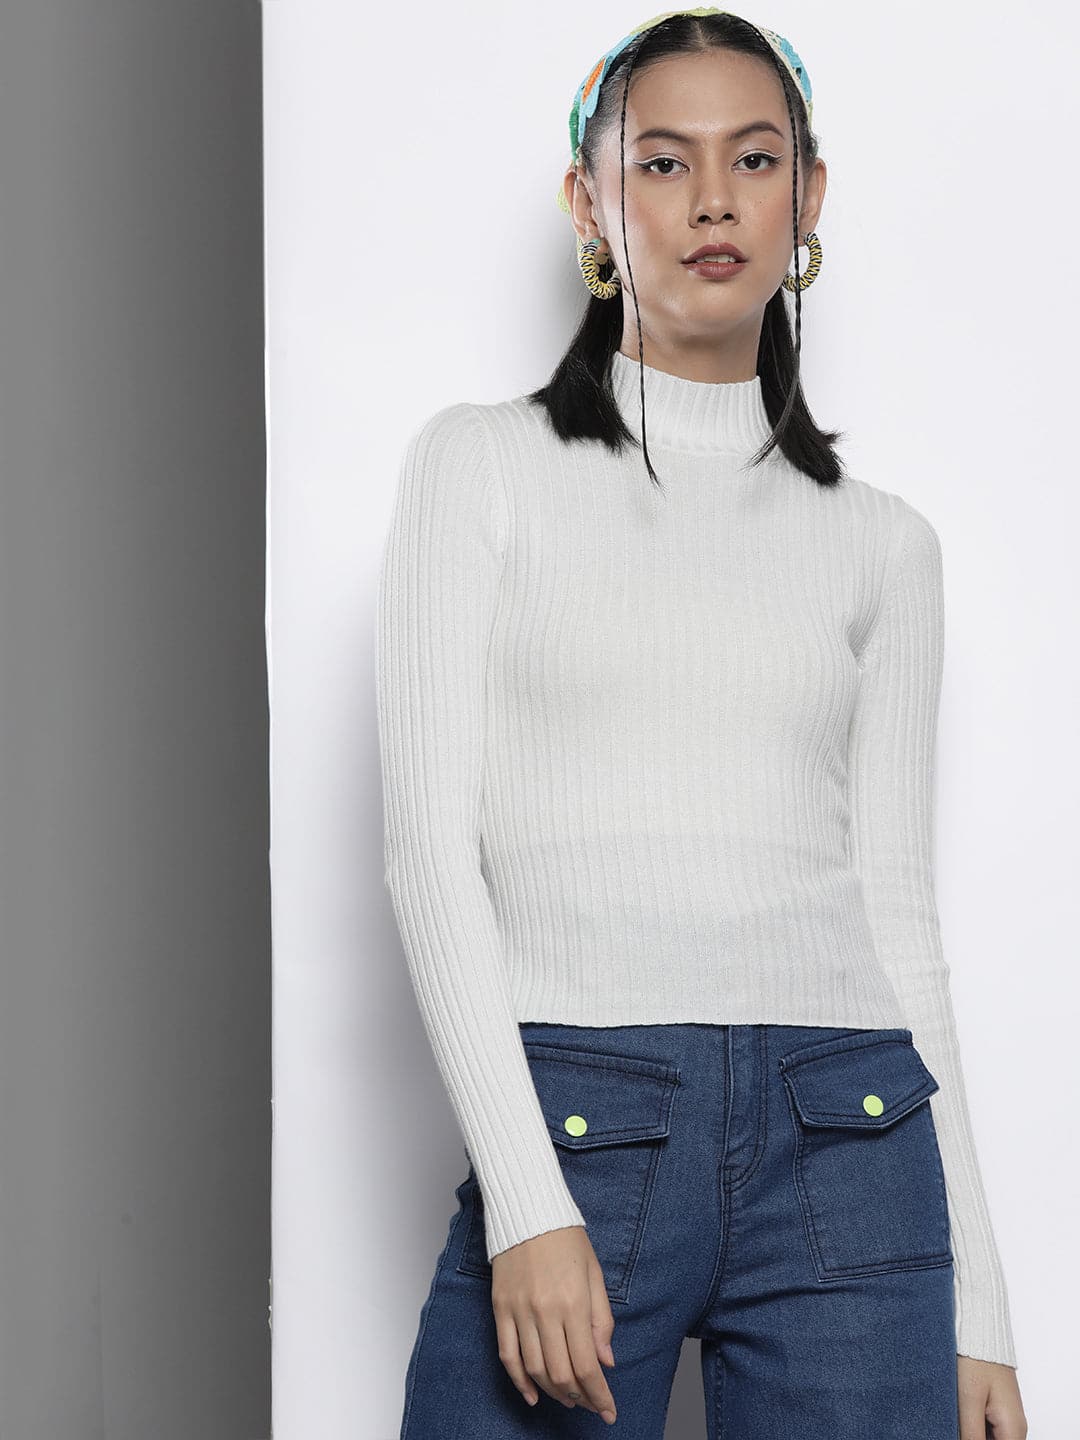 Buy Women White Rib High Neck Full Sleeves Sweater Online at Sassafras